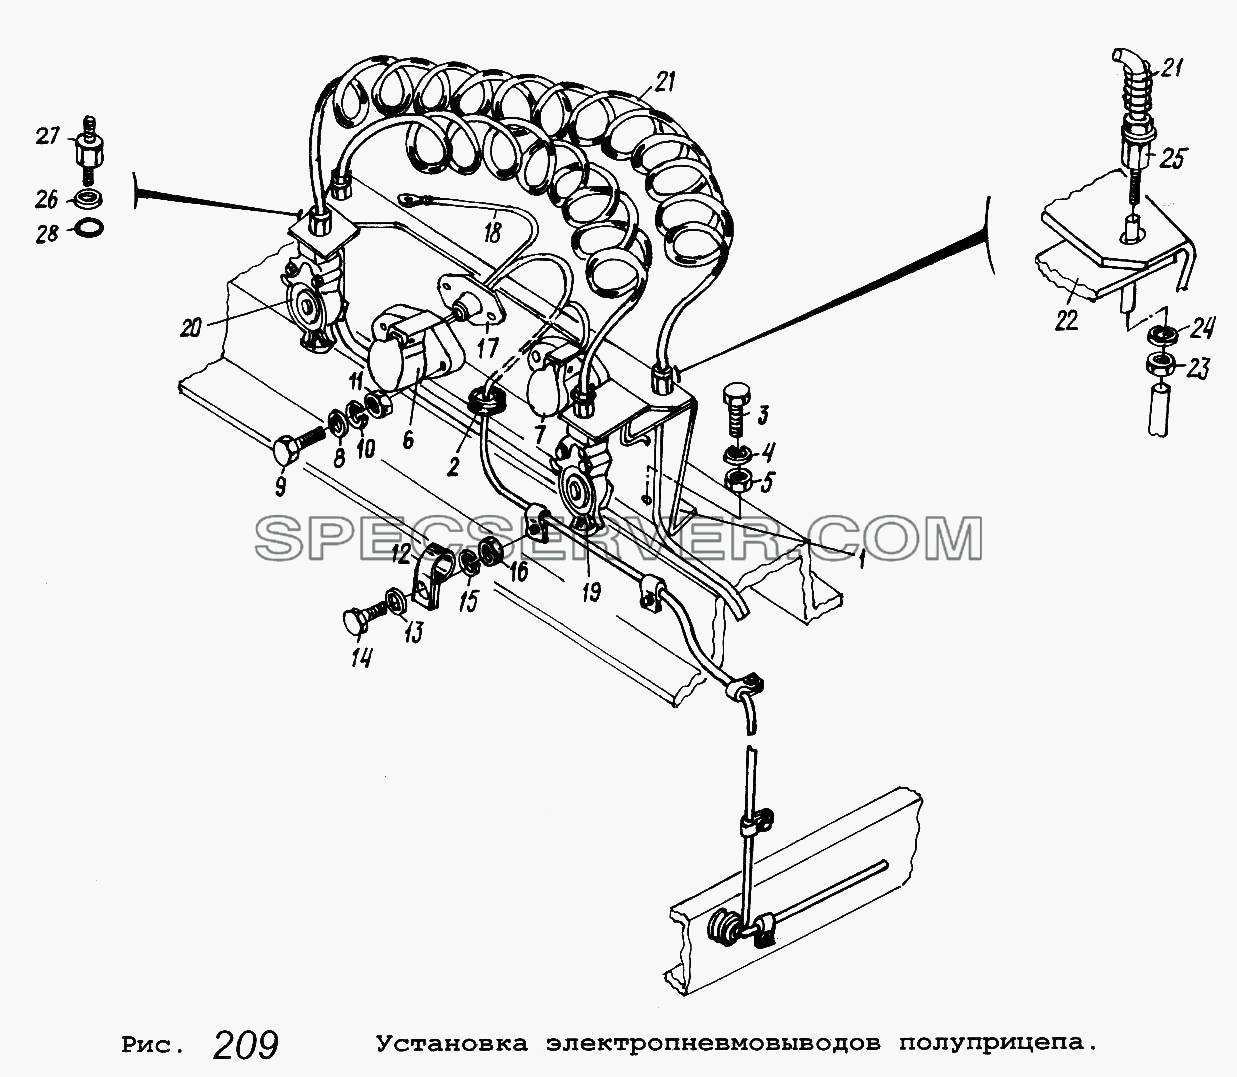 Установка электропневмовыводов полуприцепа для МАЗ-5516 (список запасных частей)